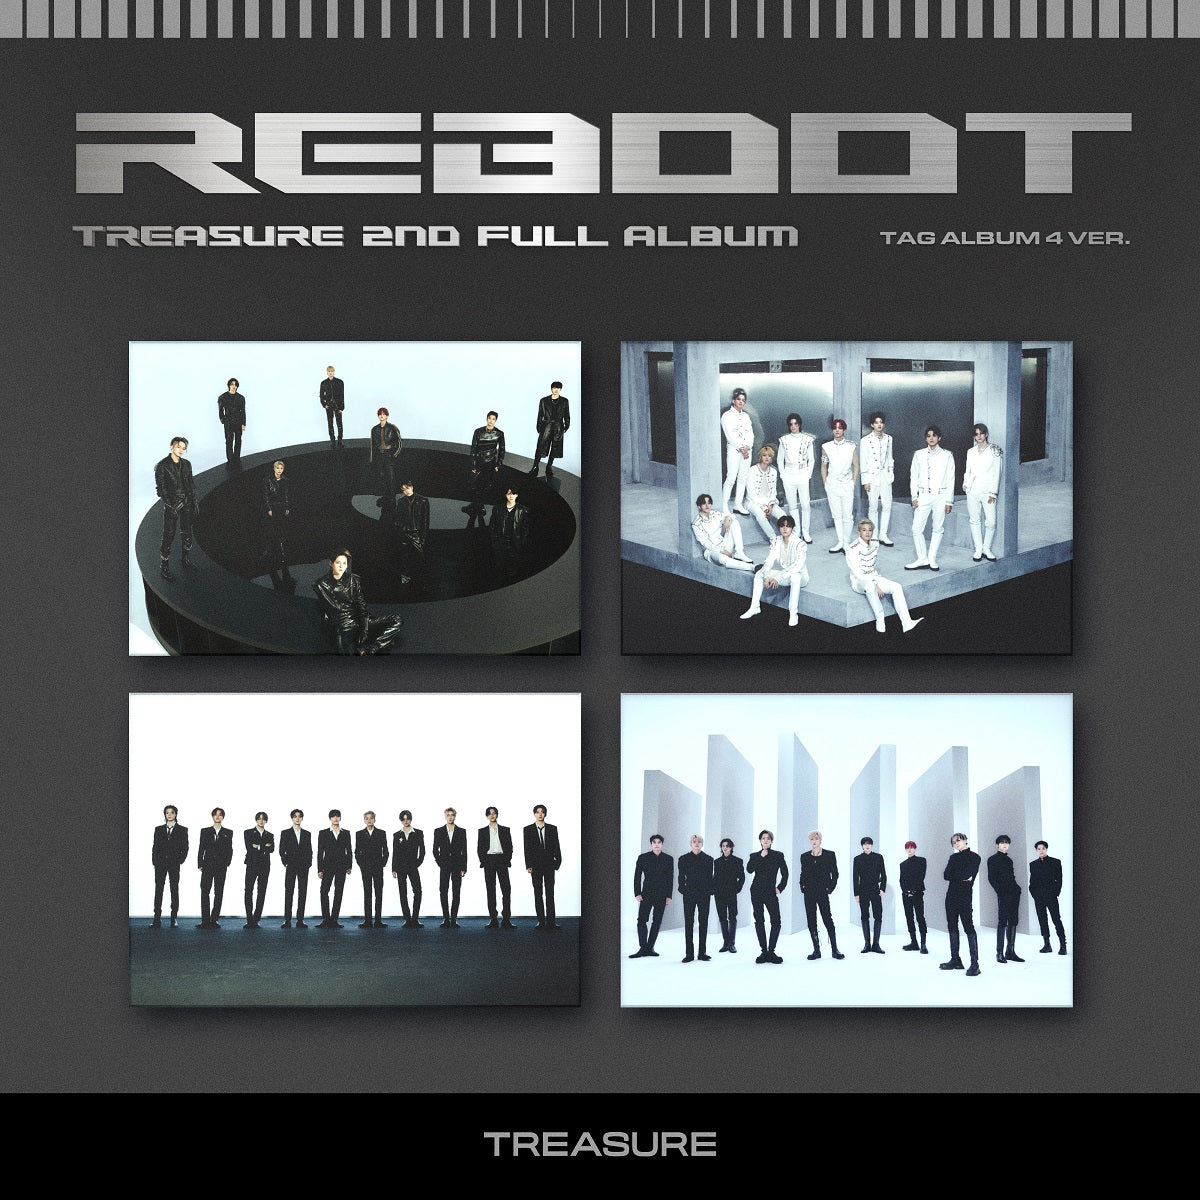 TREASURE - 2ndフルアルバム REBOOT (YG TAG ALBUM)